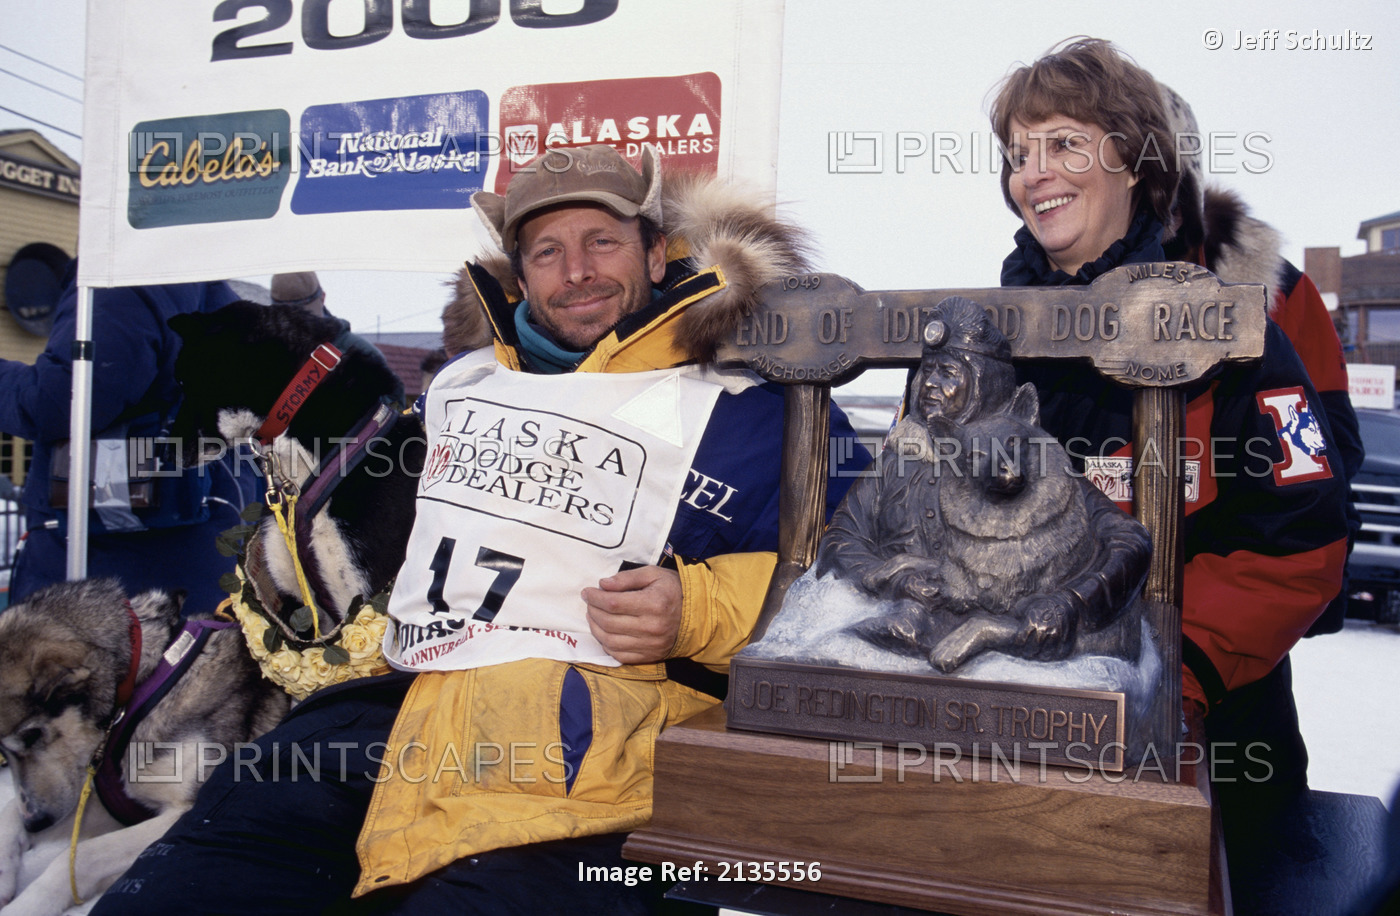 Swingley W/ Lead Dog & Joe Redington Sr. Trophy Nome/N2000 Iditarod